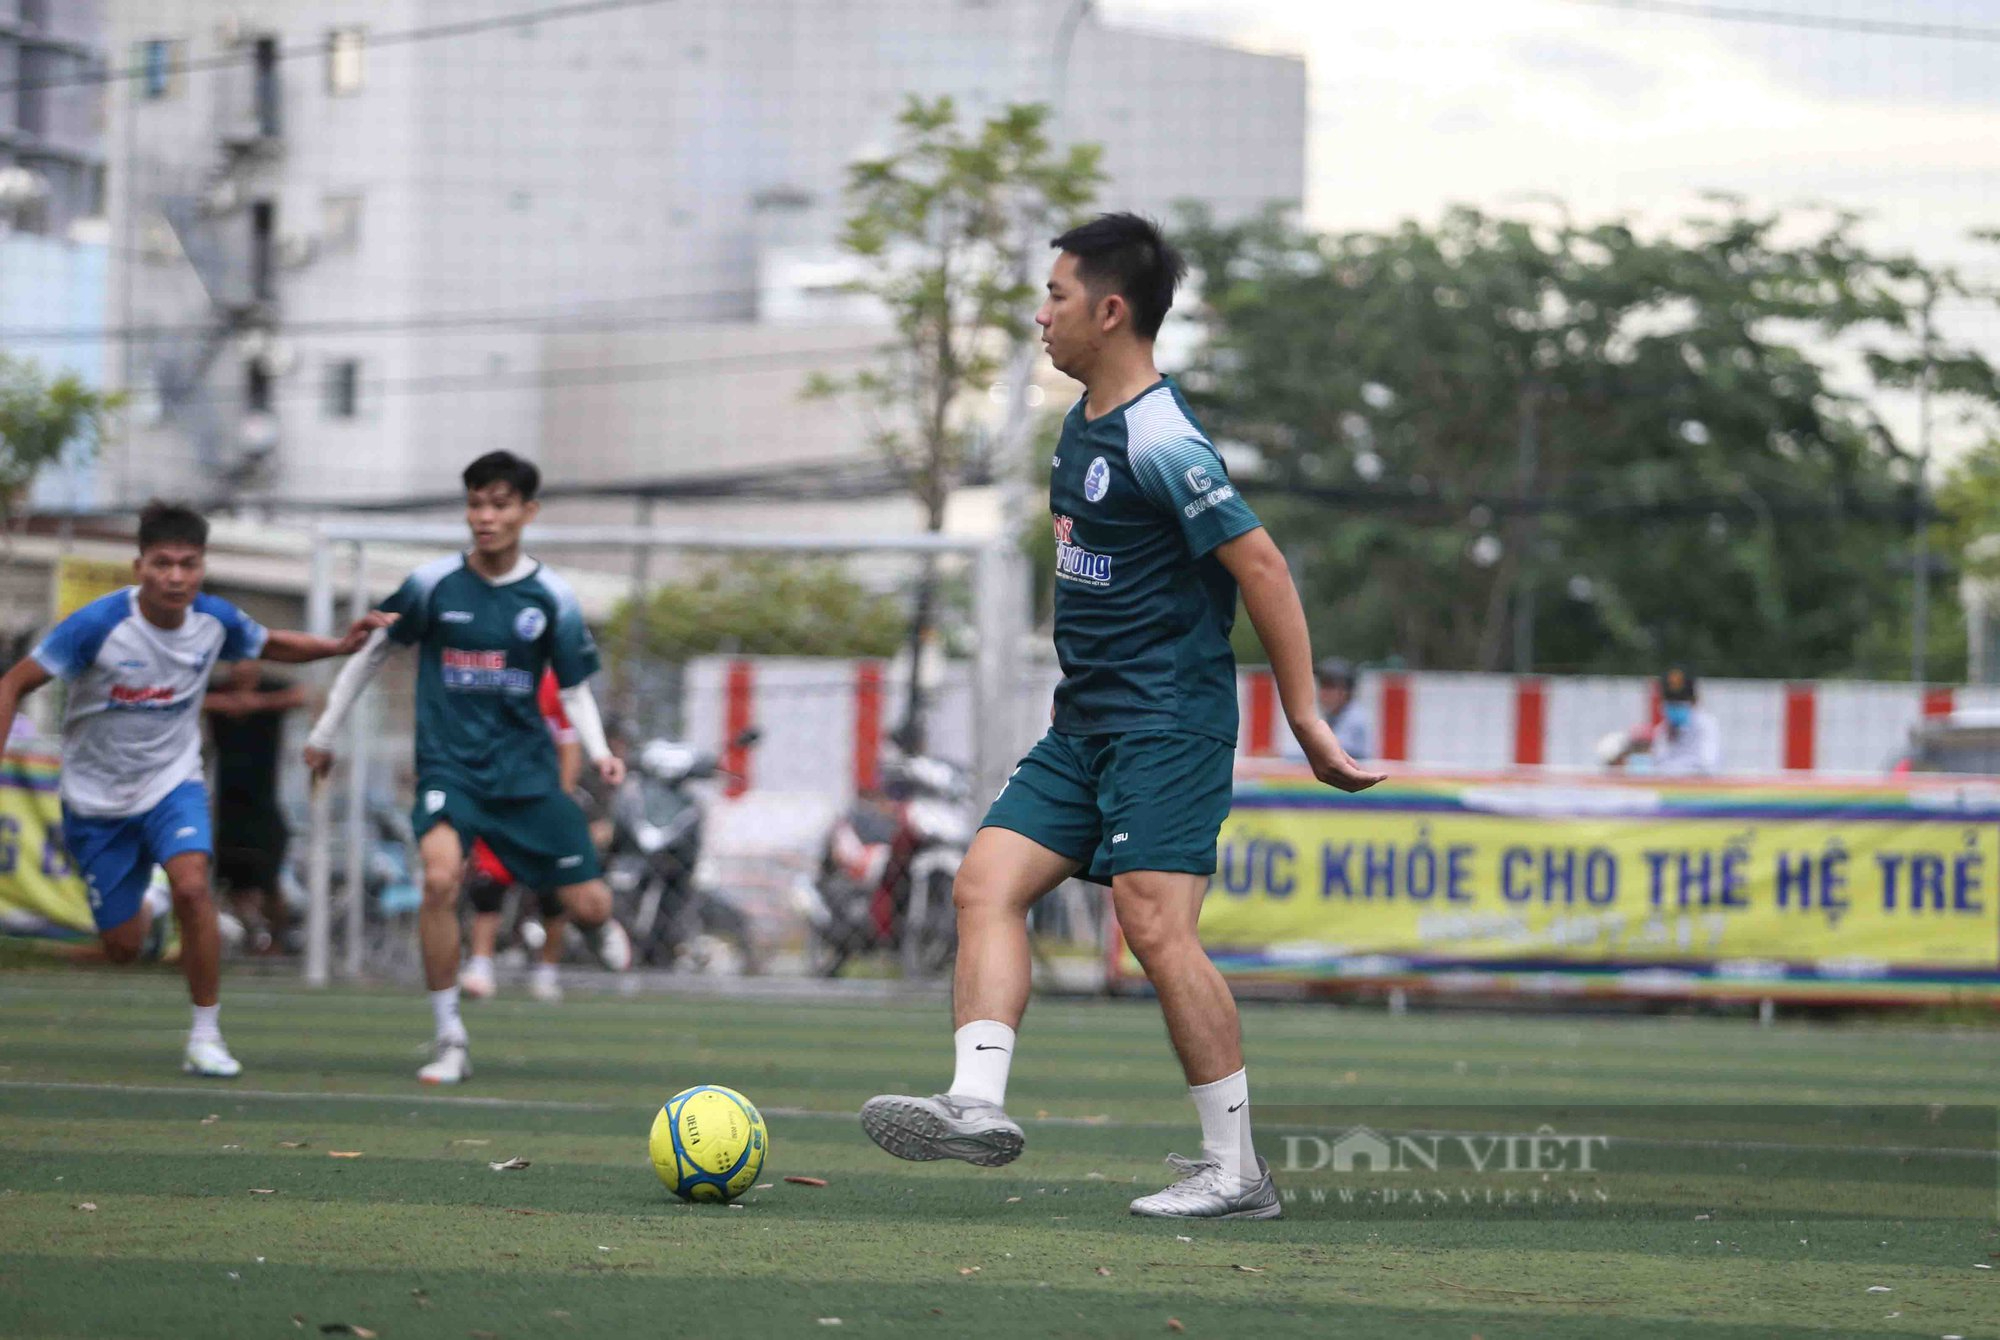 Sân bóng phong trào Sài Gòn rộn rã mùa World Cup  - Ảnh 1.